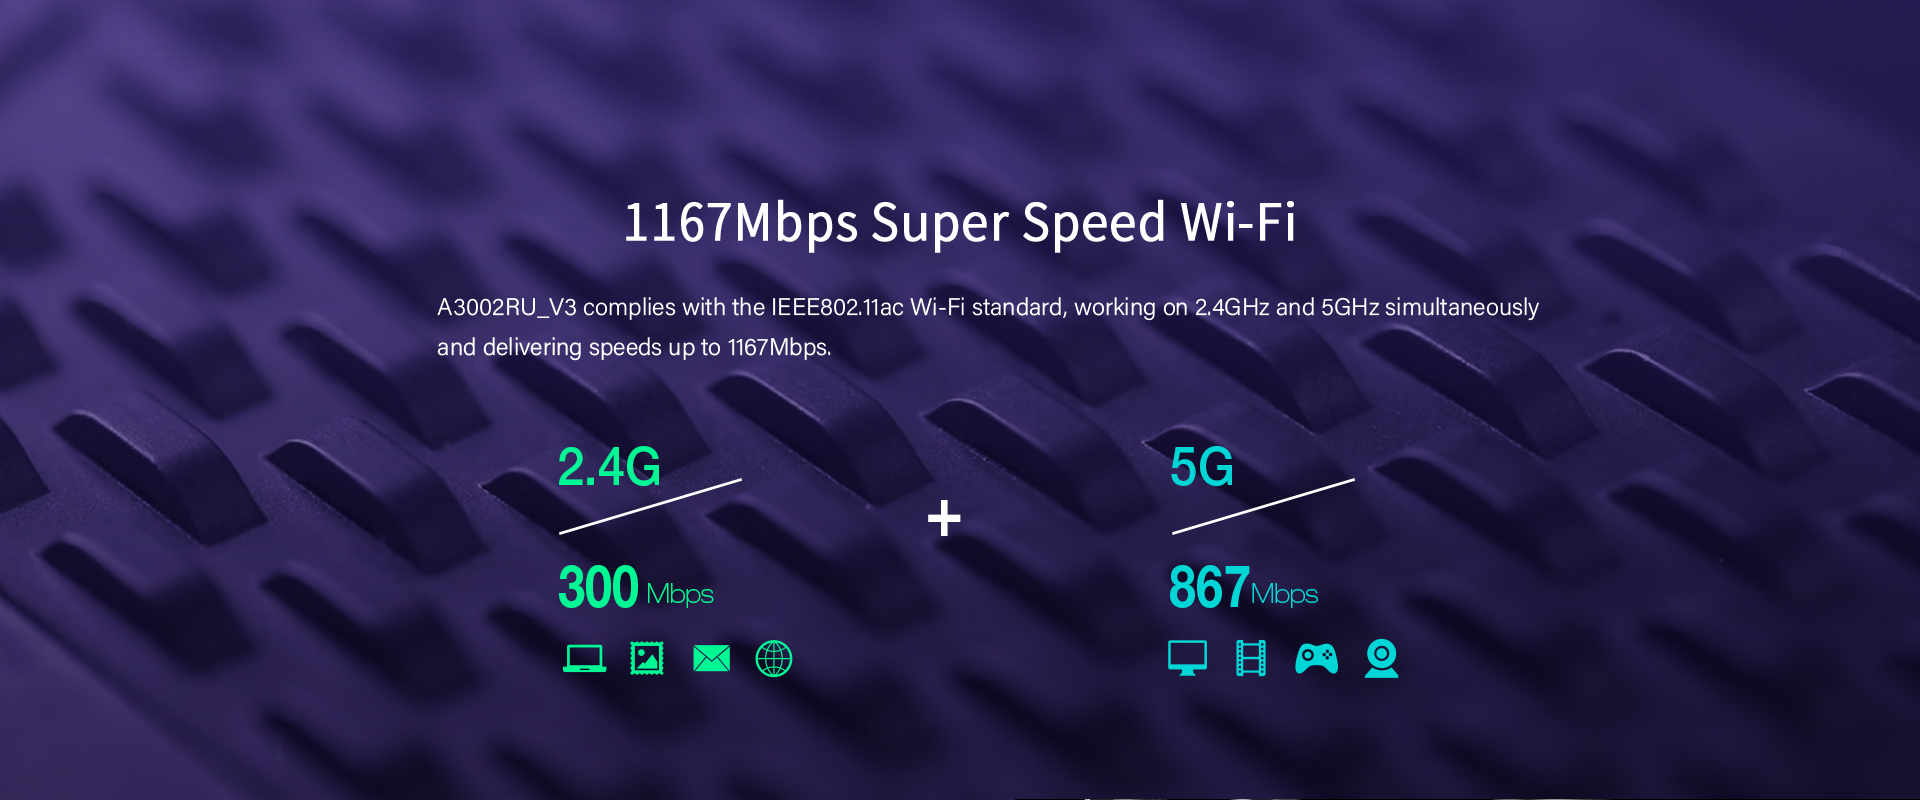 Super-fast Speed Wi-Fi